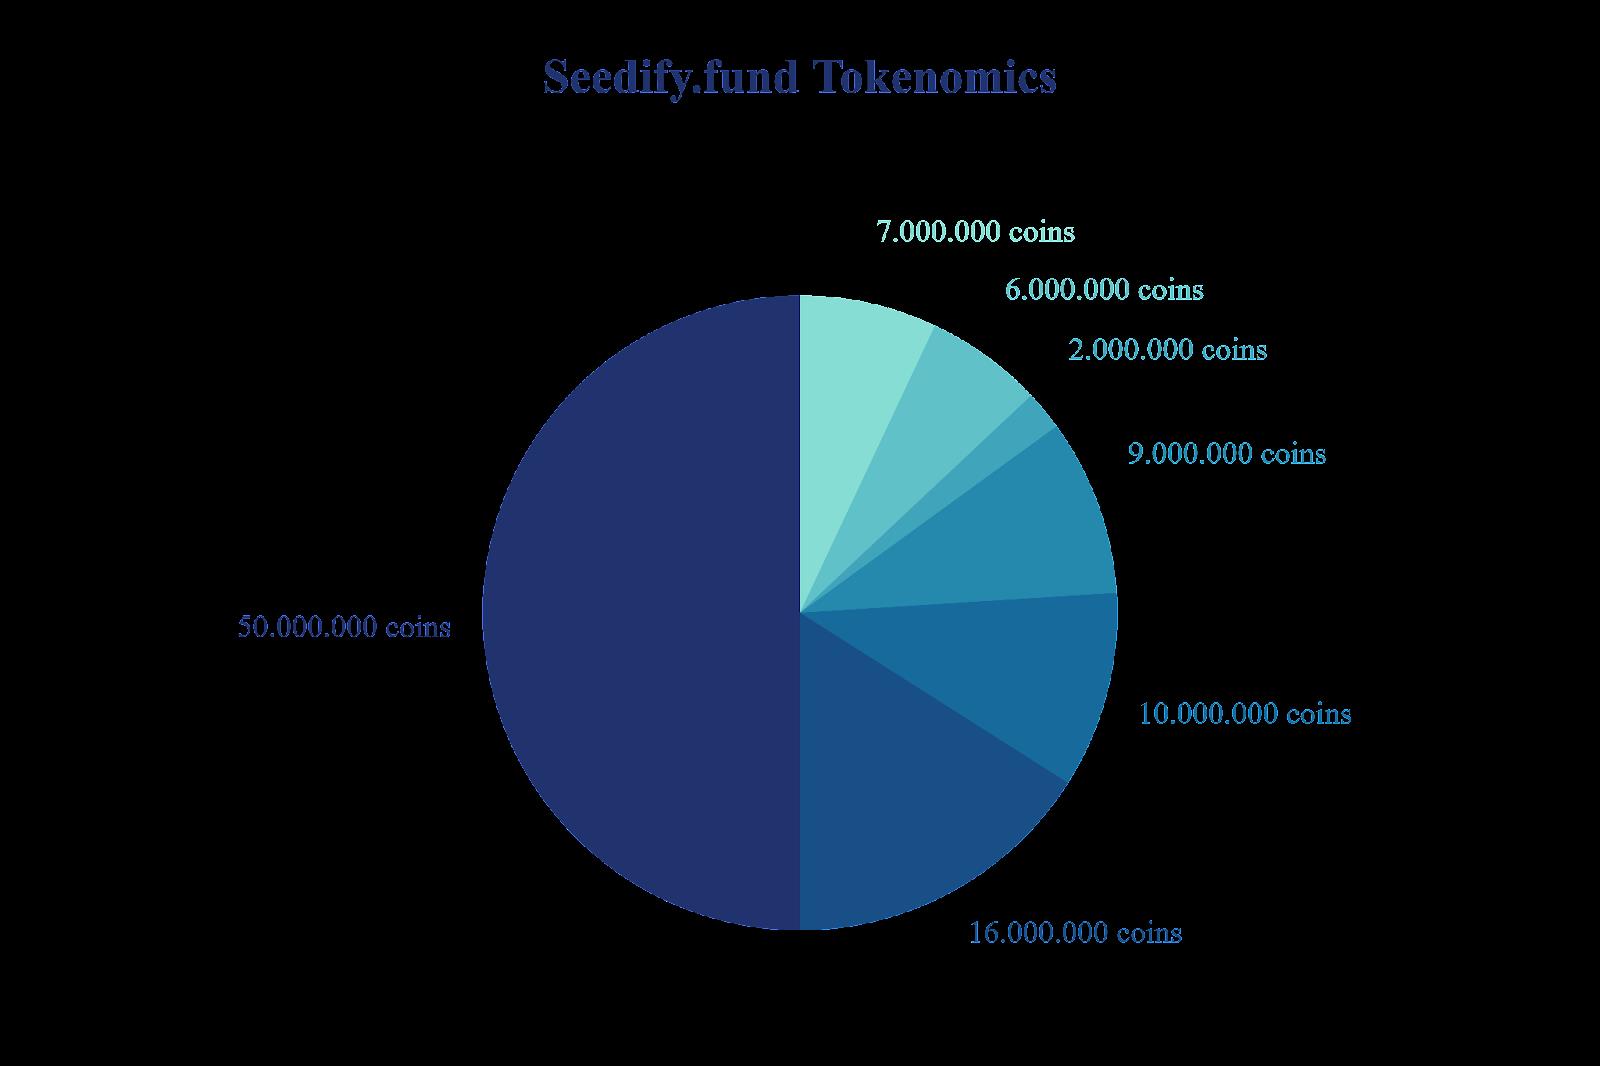 Qu'est-ce que Seedify.fund (SFUND) ?  La crypto-monnaie SFUND est-elle terminée ?